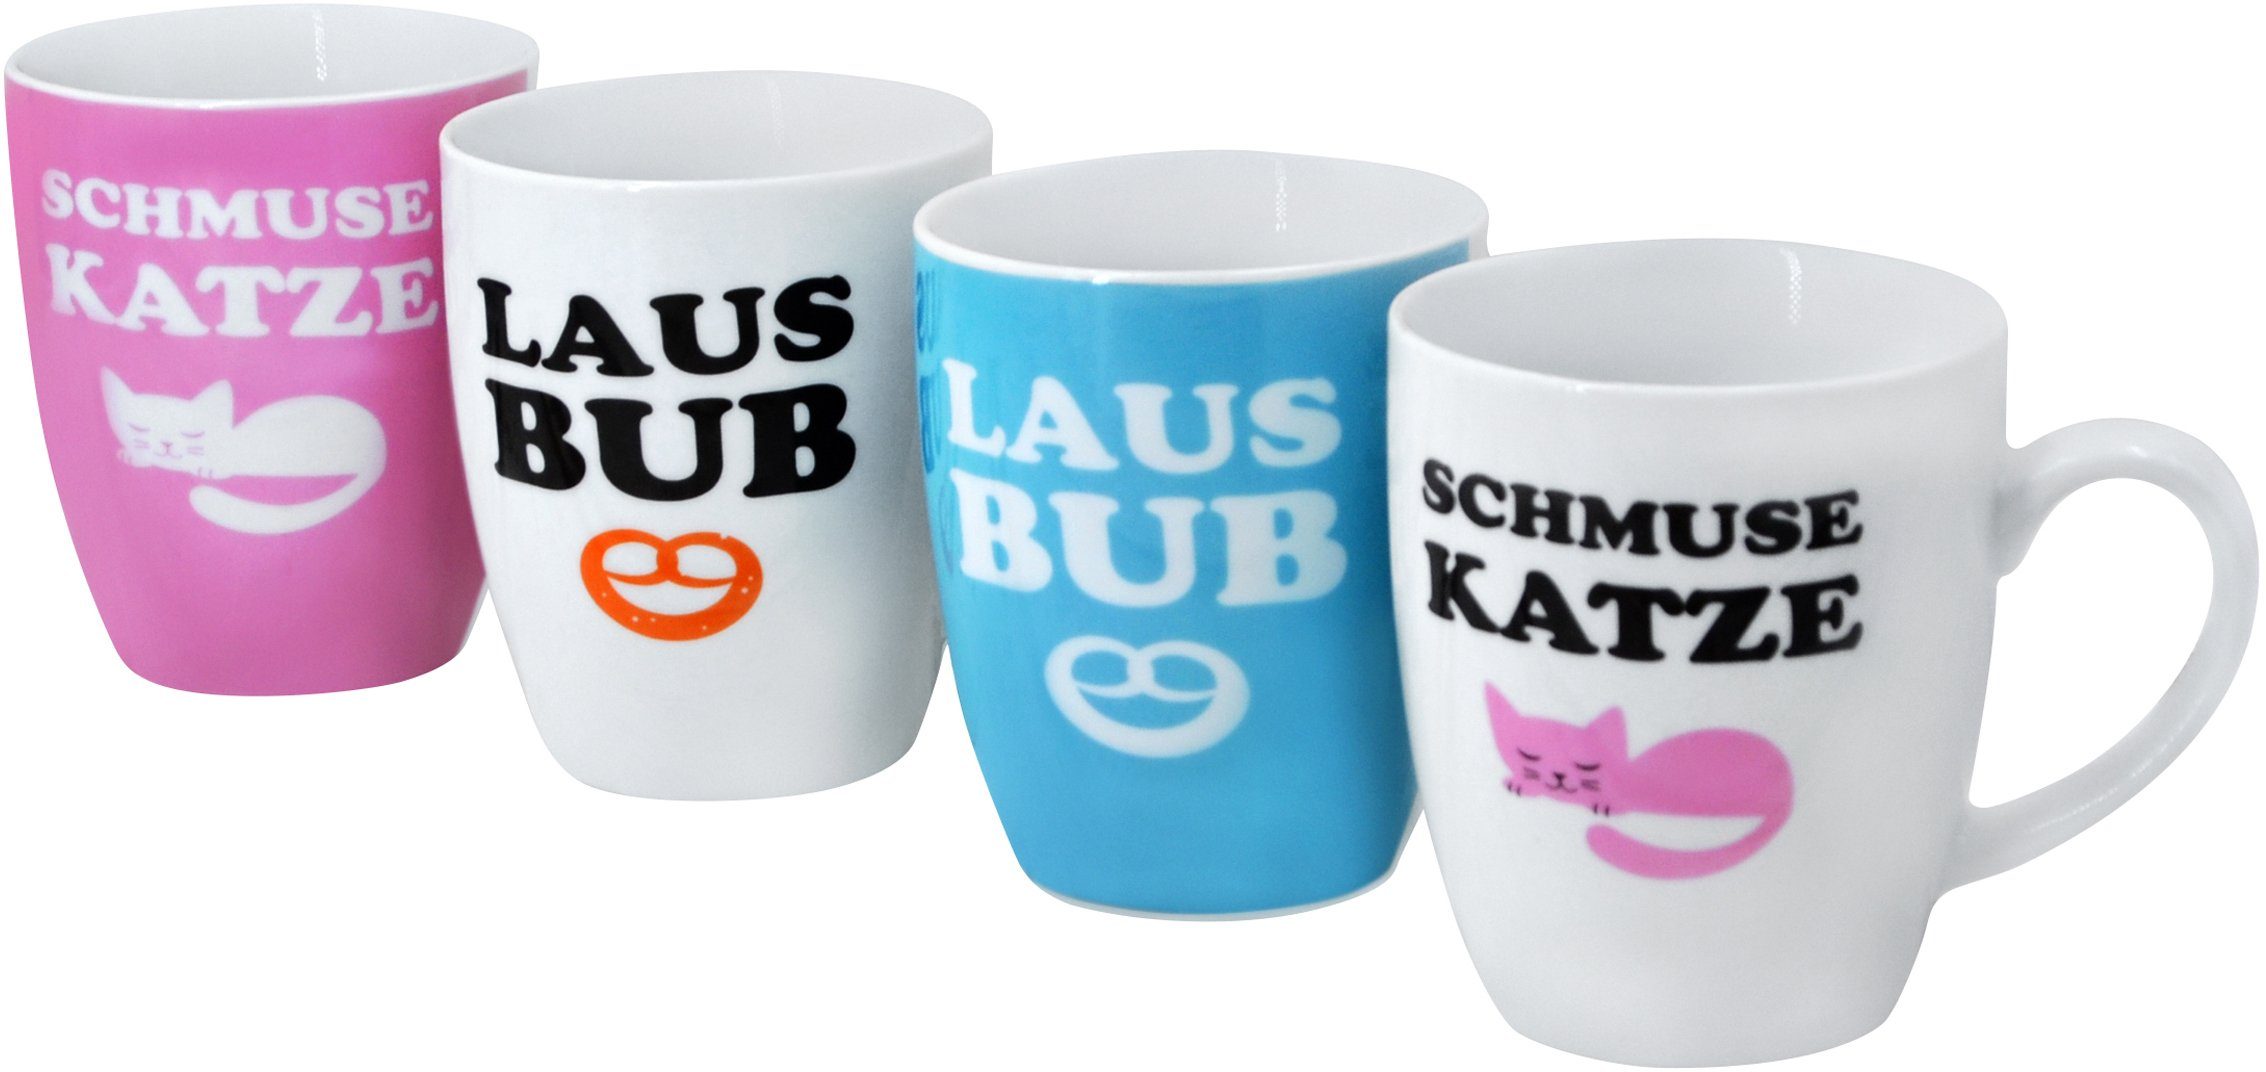 Retsch Arzberg Becher Schmusekatze & Lausbub, Porzellan, 4-teilig | Kaffeebecher